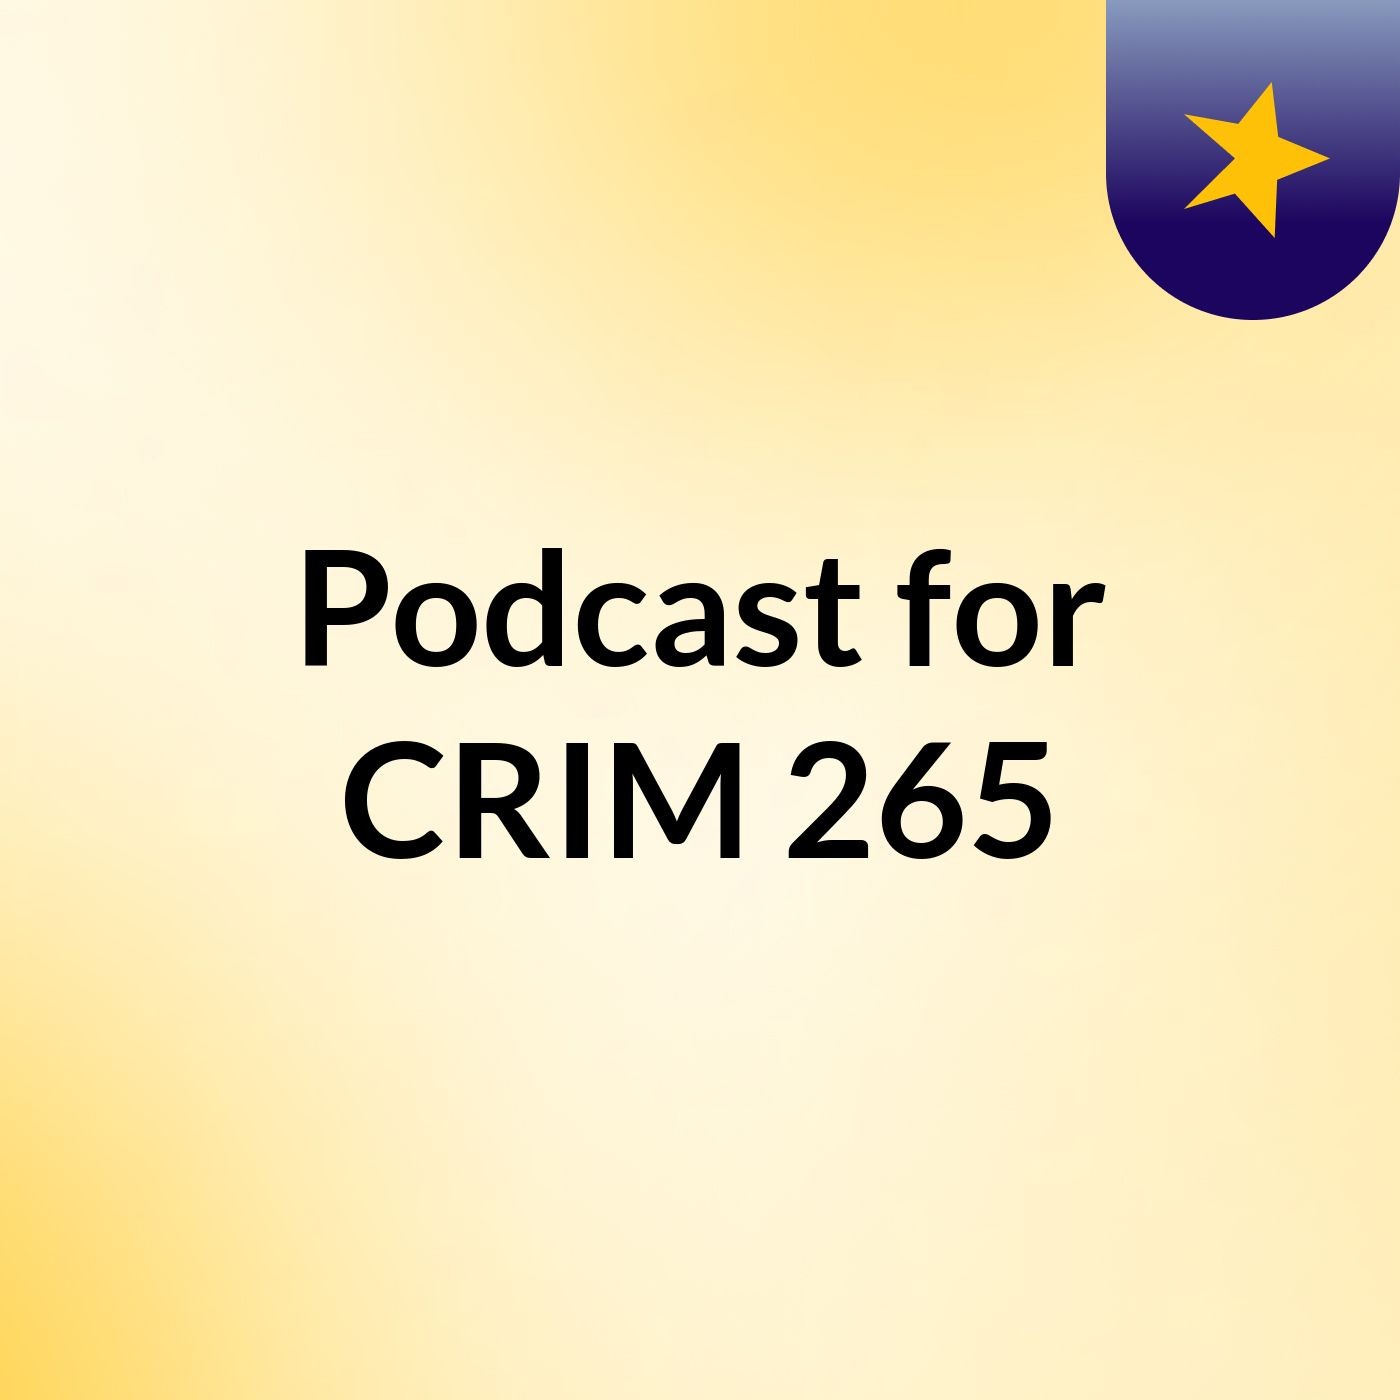 Podcast for Crim 265 summer